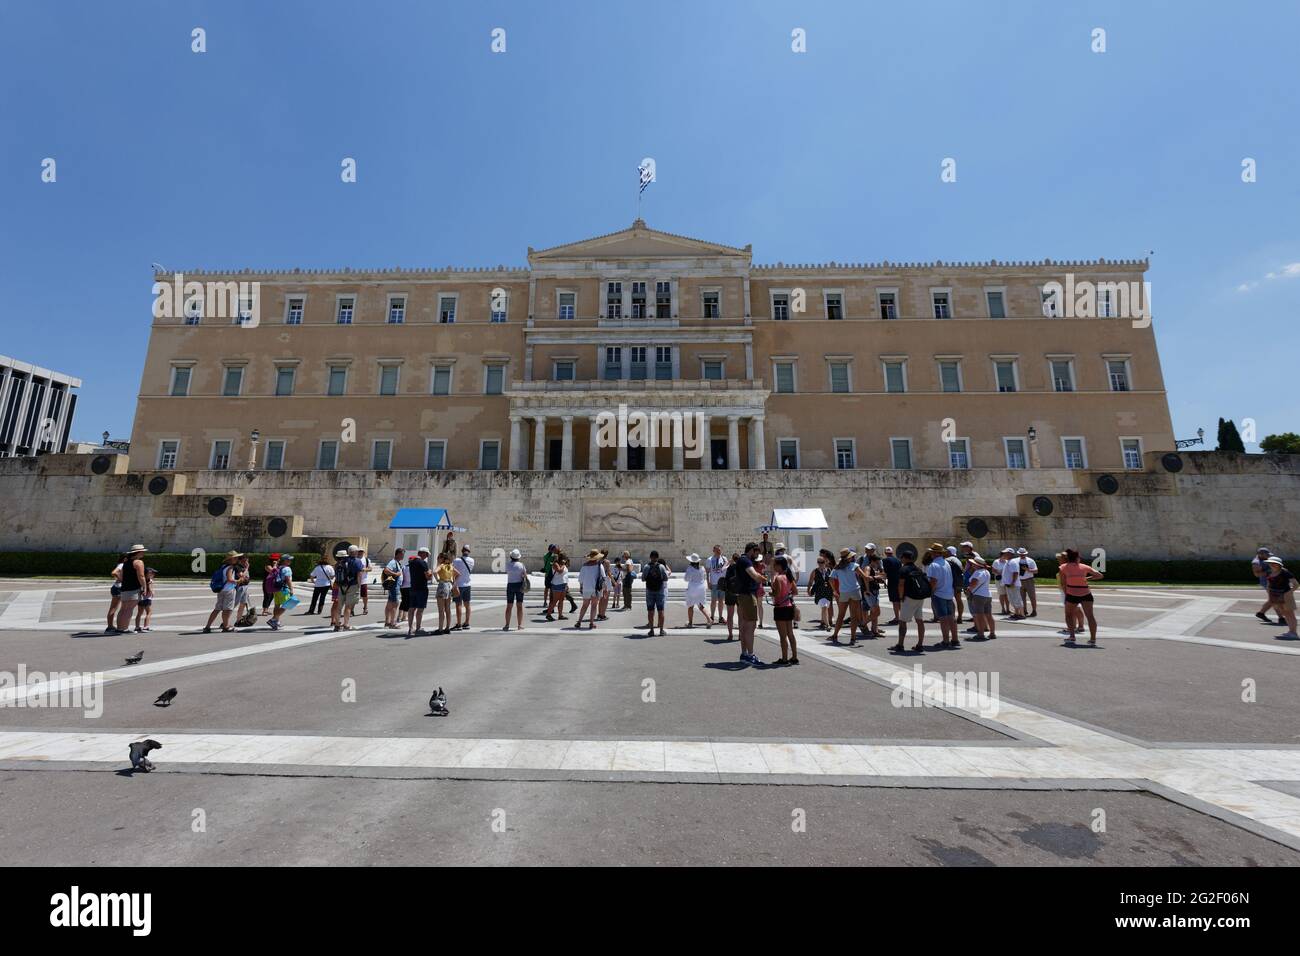 Griechisches Parlamentsgebäude - Athen Griechenland Stockfoto